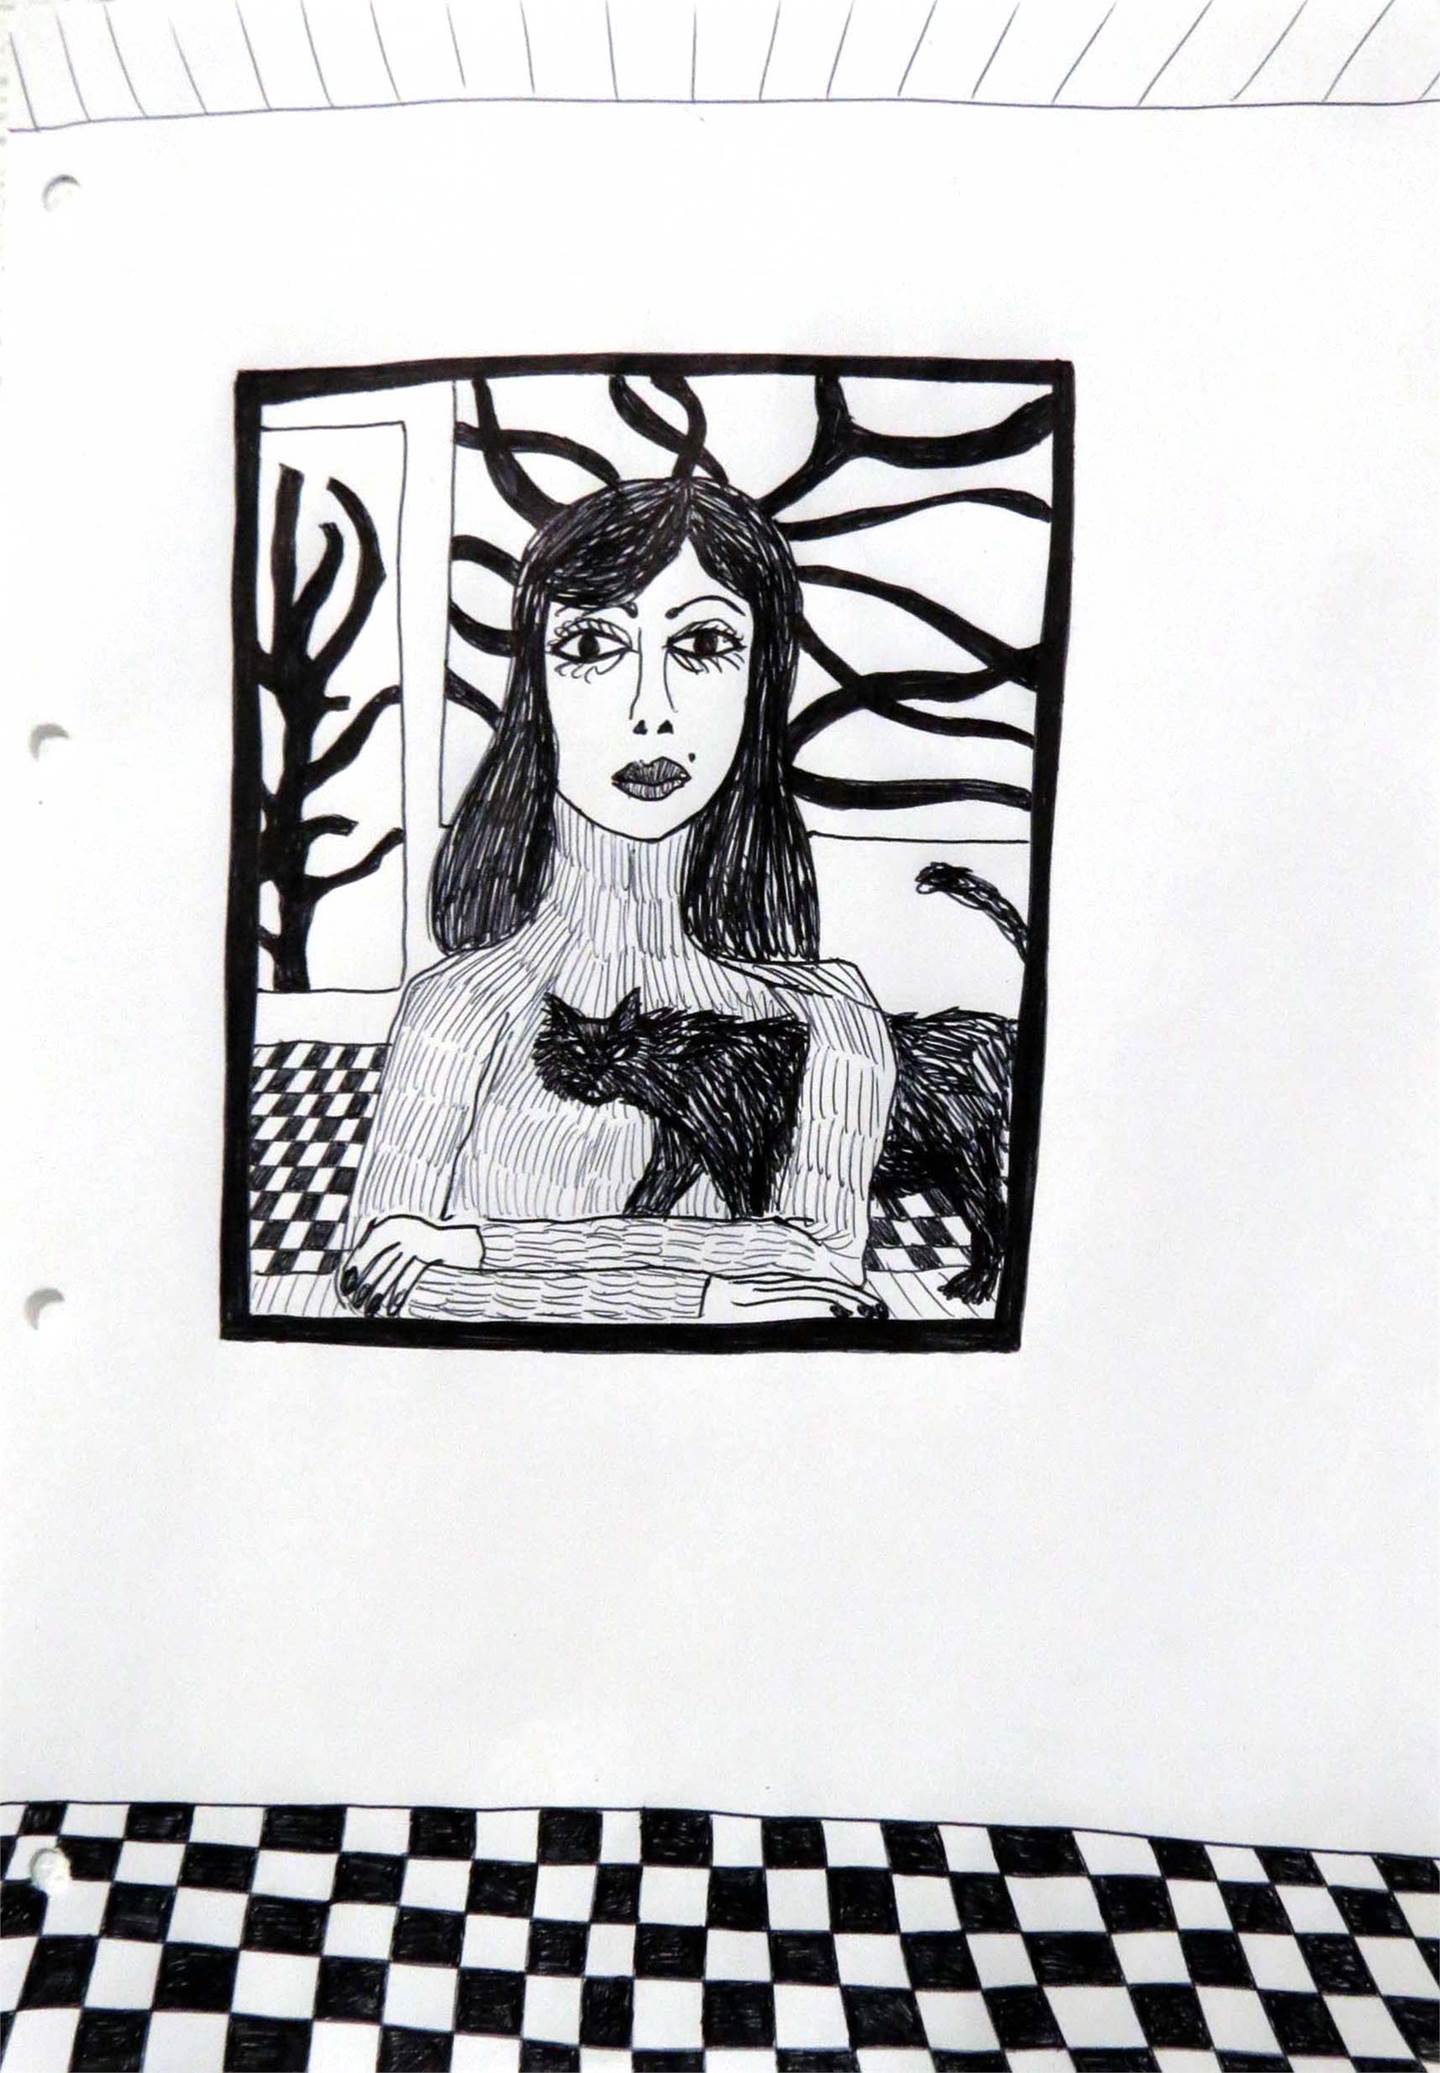 37. Retrato de uma mulher com o gato, original Human Figure Pen Drawing and Illustration by Hugo Castilho